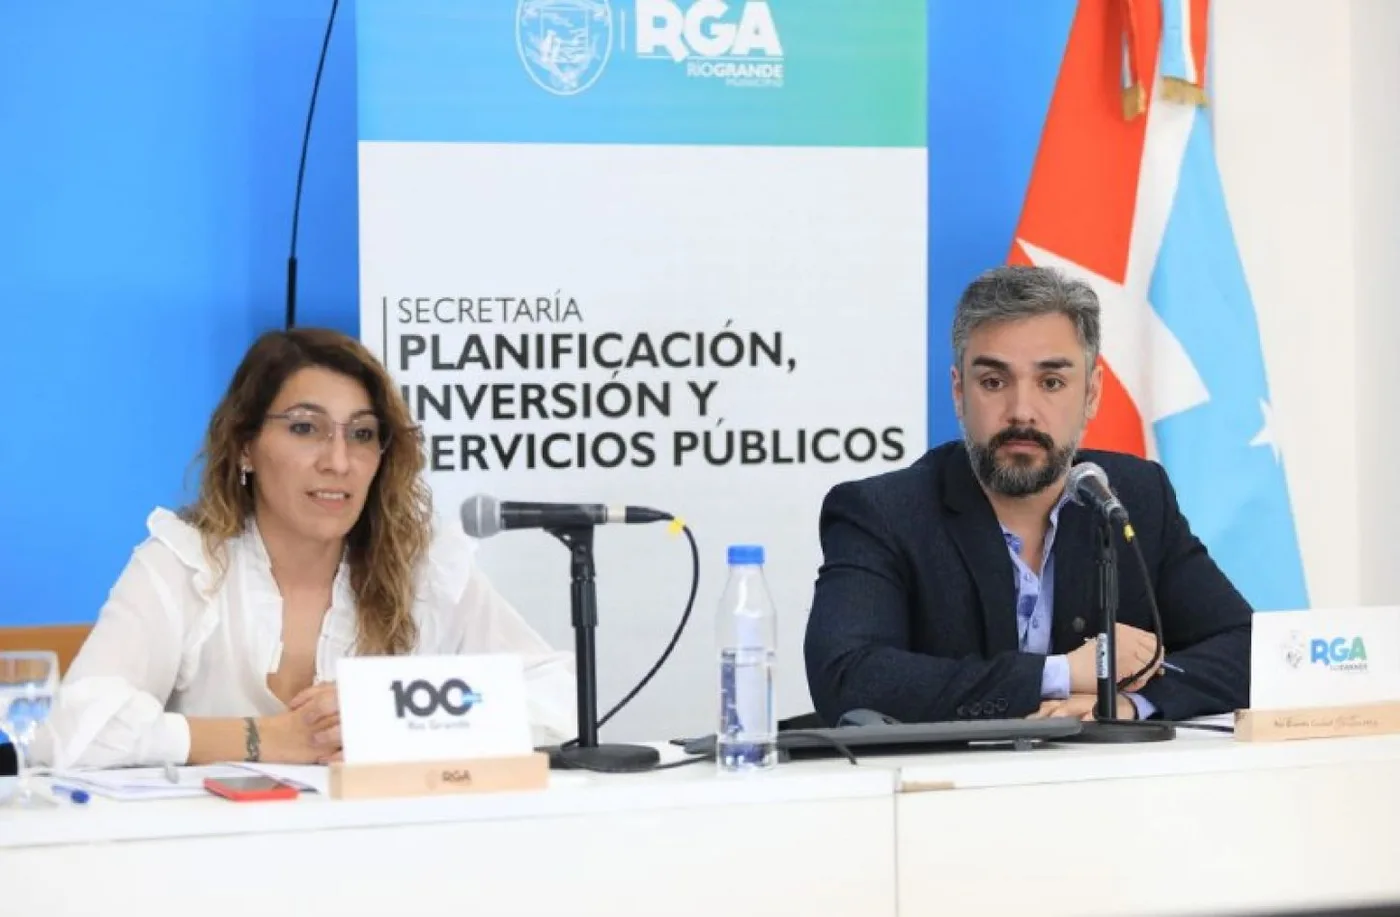 Secretaria de Planificación, Inversión y Servicios Públicos del Municipio de Río Grande, Silvina Mónaco.